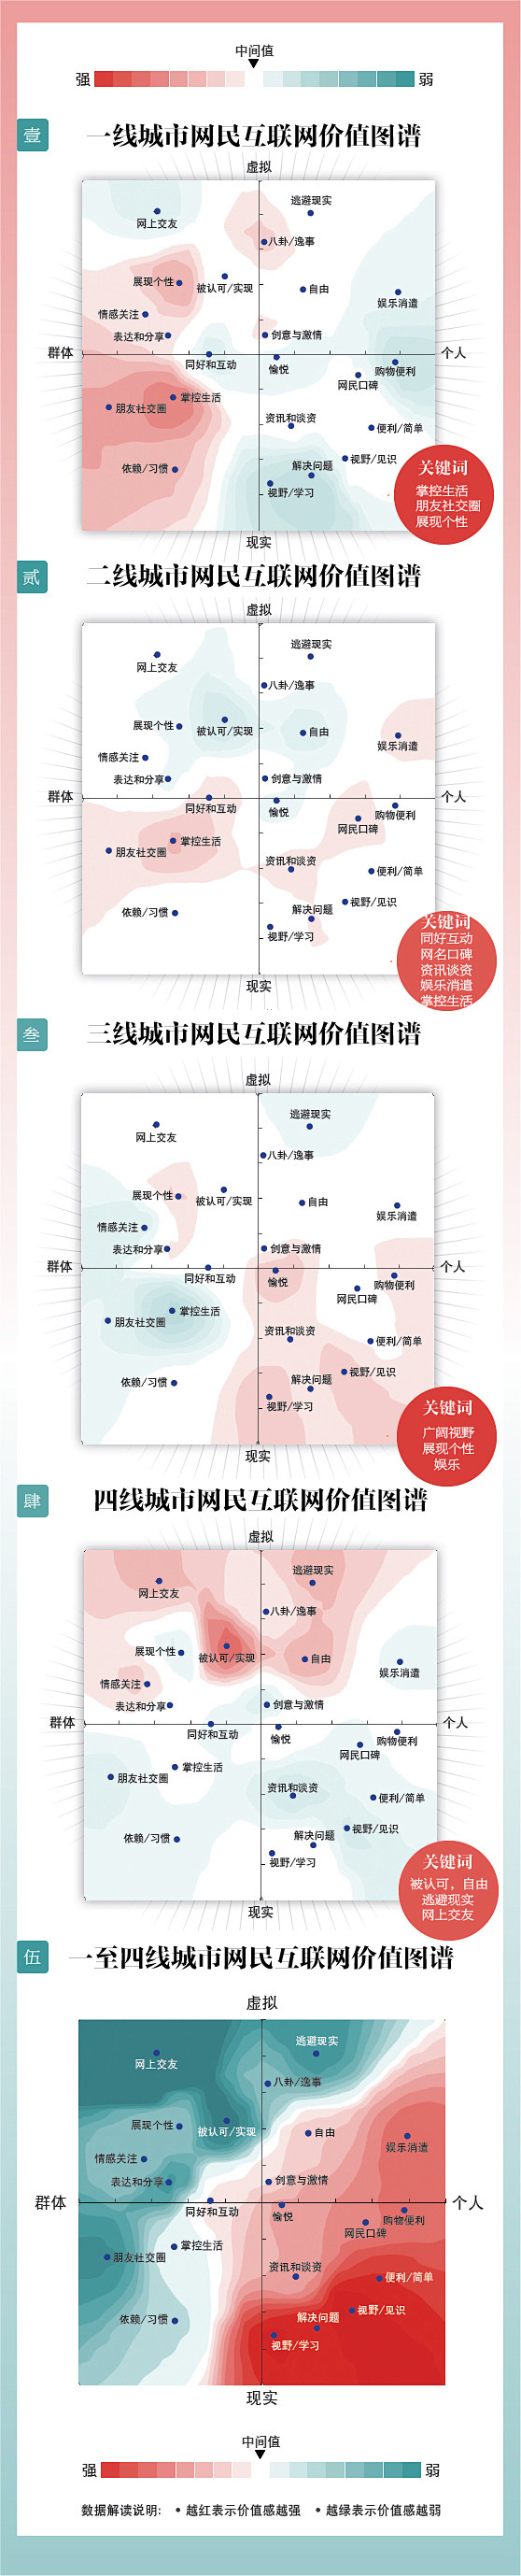 中国1－4线城市互联网价值分布